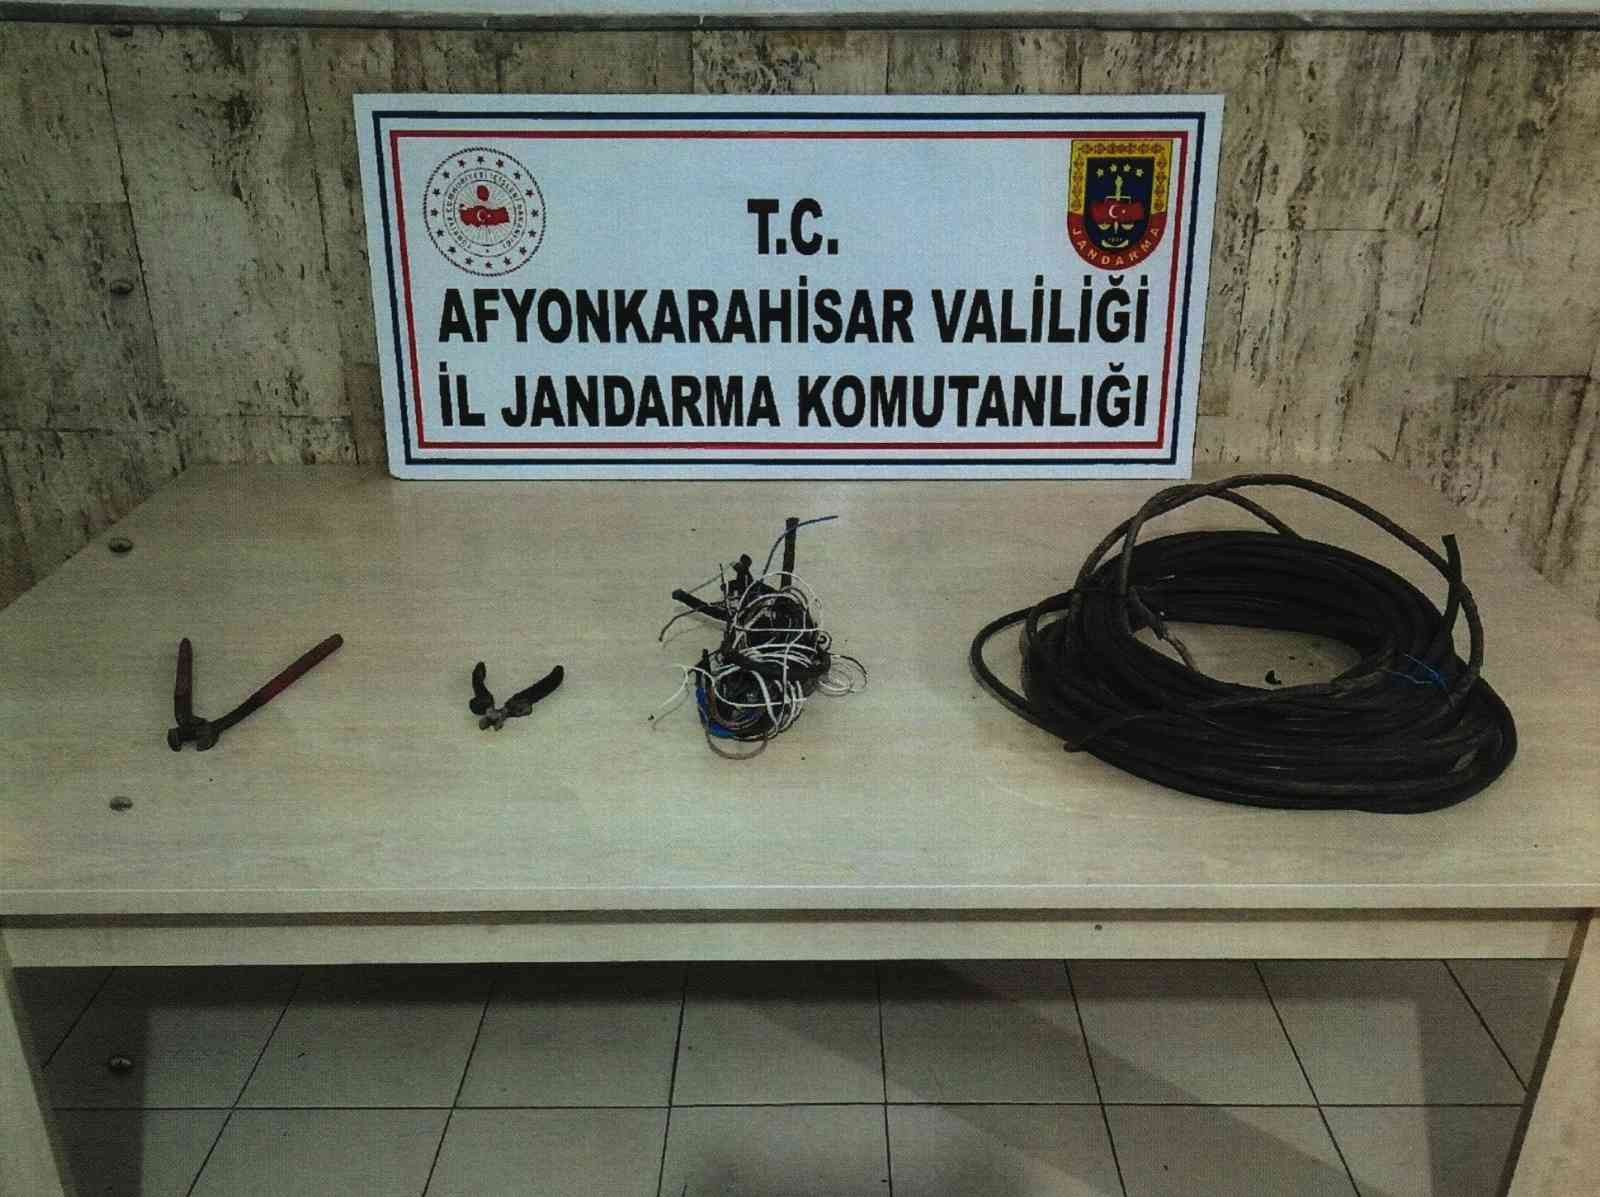 Çaldıkları kabloları hurdacıya satamadan yakalandılar #afyonkarahisar